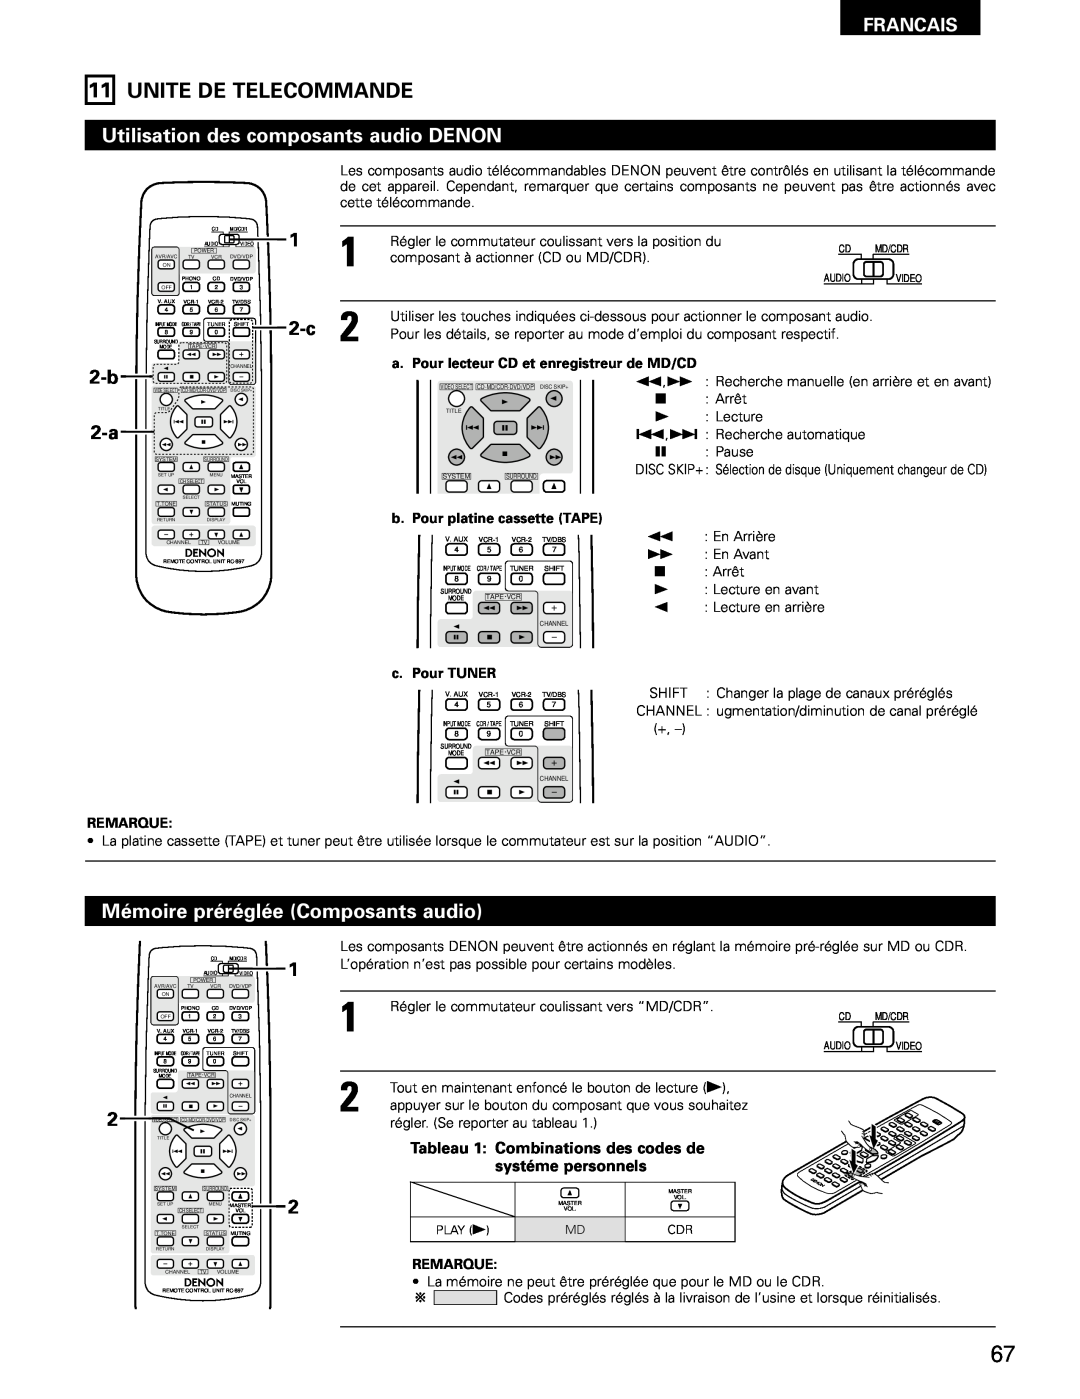 Denon AVR-1802/882 manual Unite De Telecommande, Francais, b. Pour platine cassette TAPE, c. Pour TUNER, Remarque 